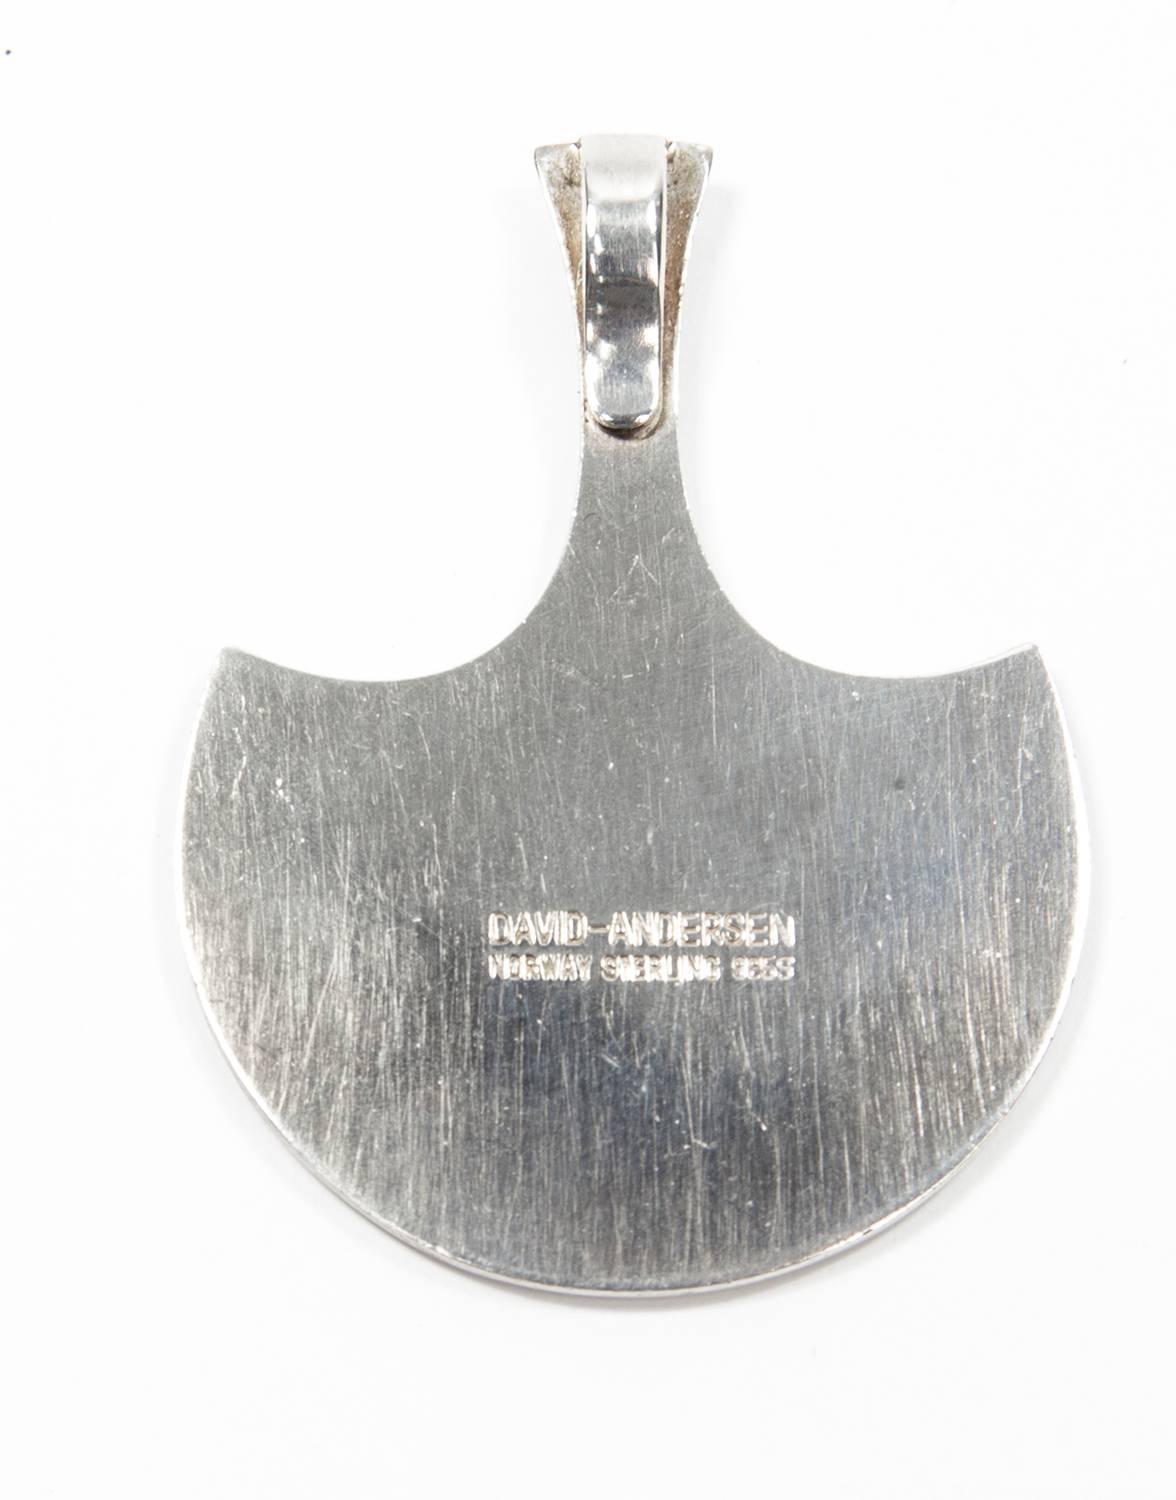 Lovely Enamel on Sterling Silver Pendant by Norway's premier Enamellist, David Andersen; 